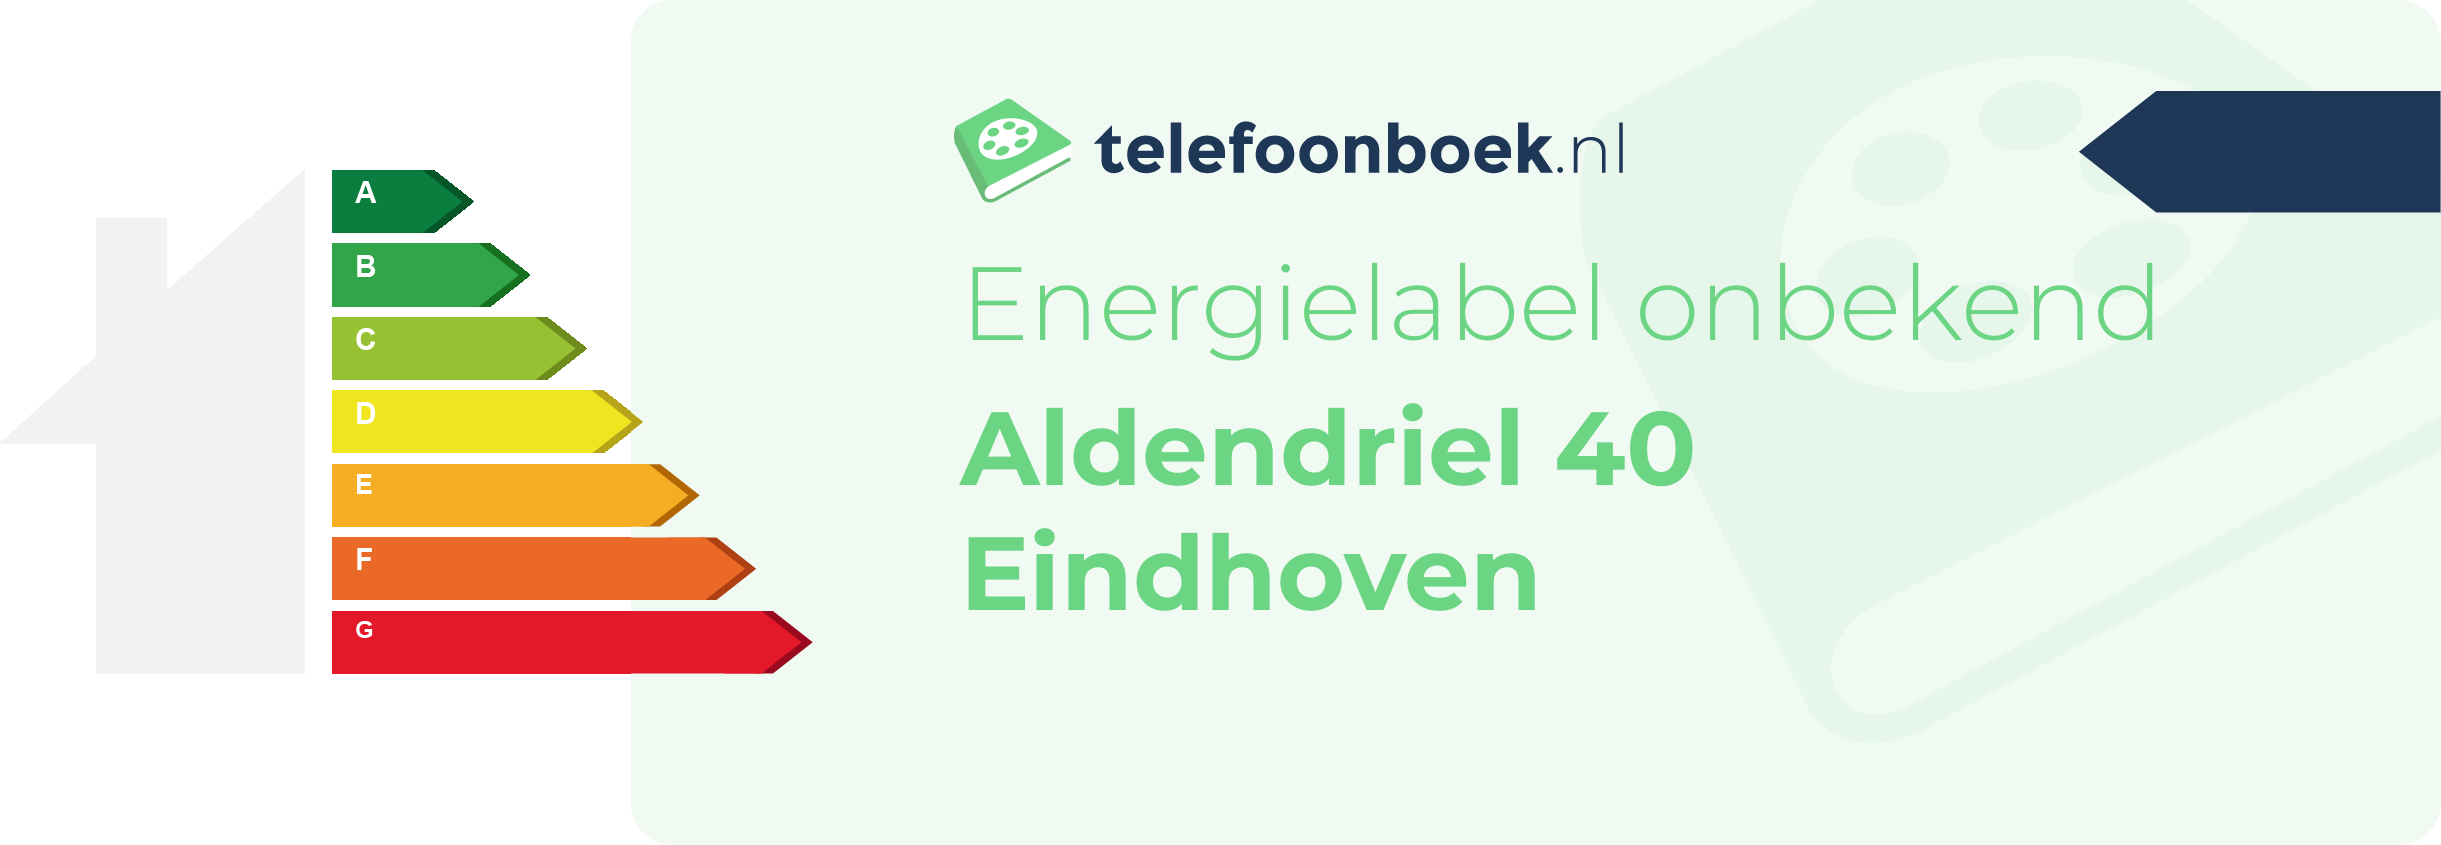 Energielabel Aldendriel 40 Eindhoven